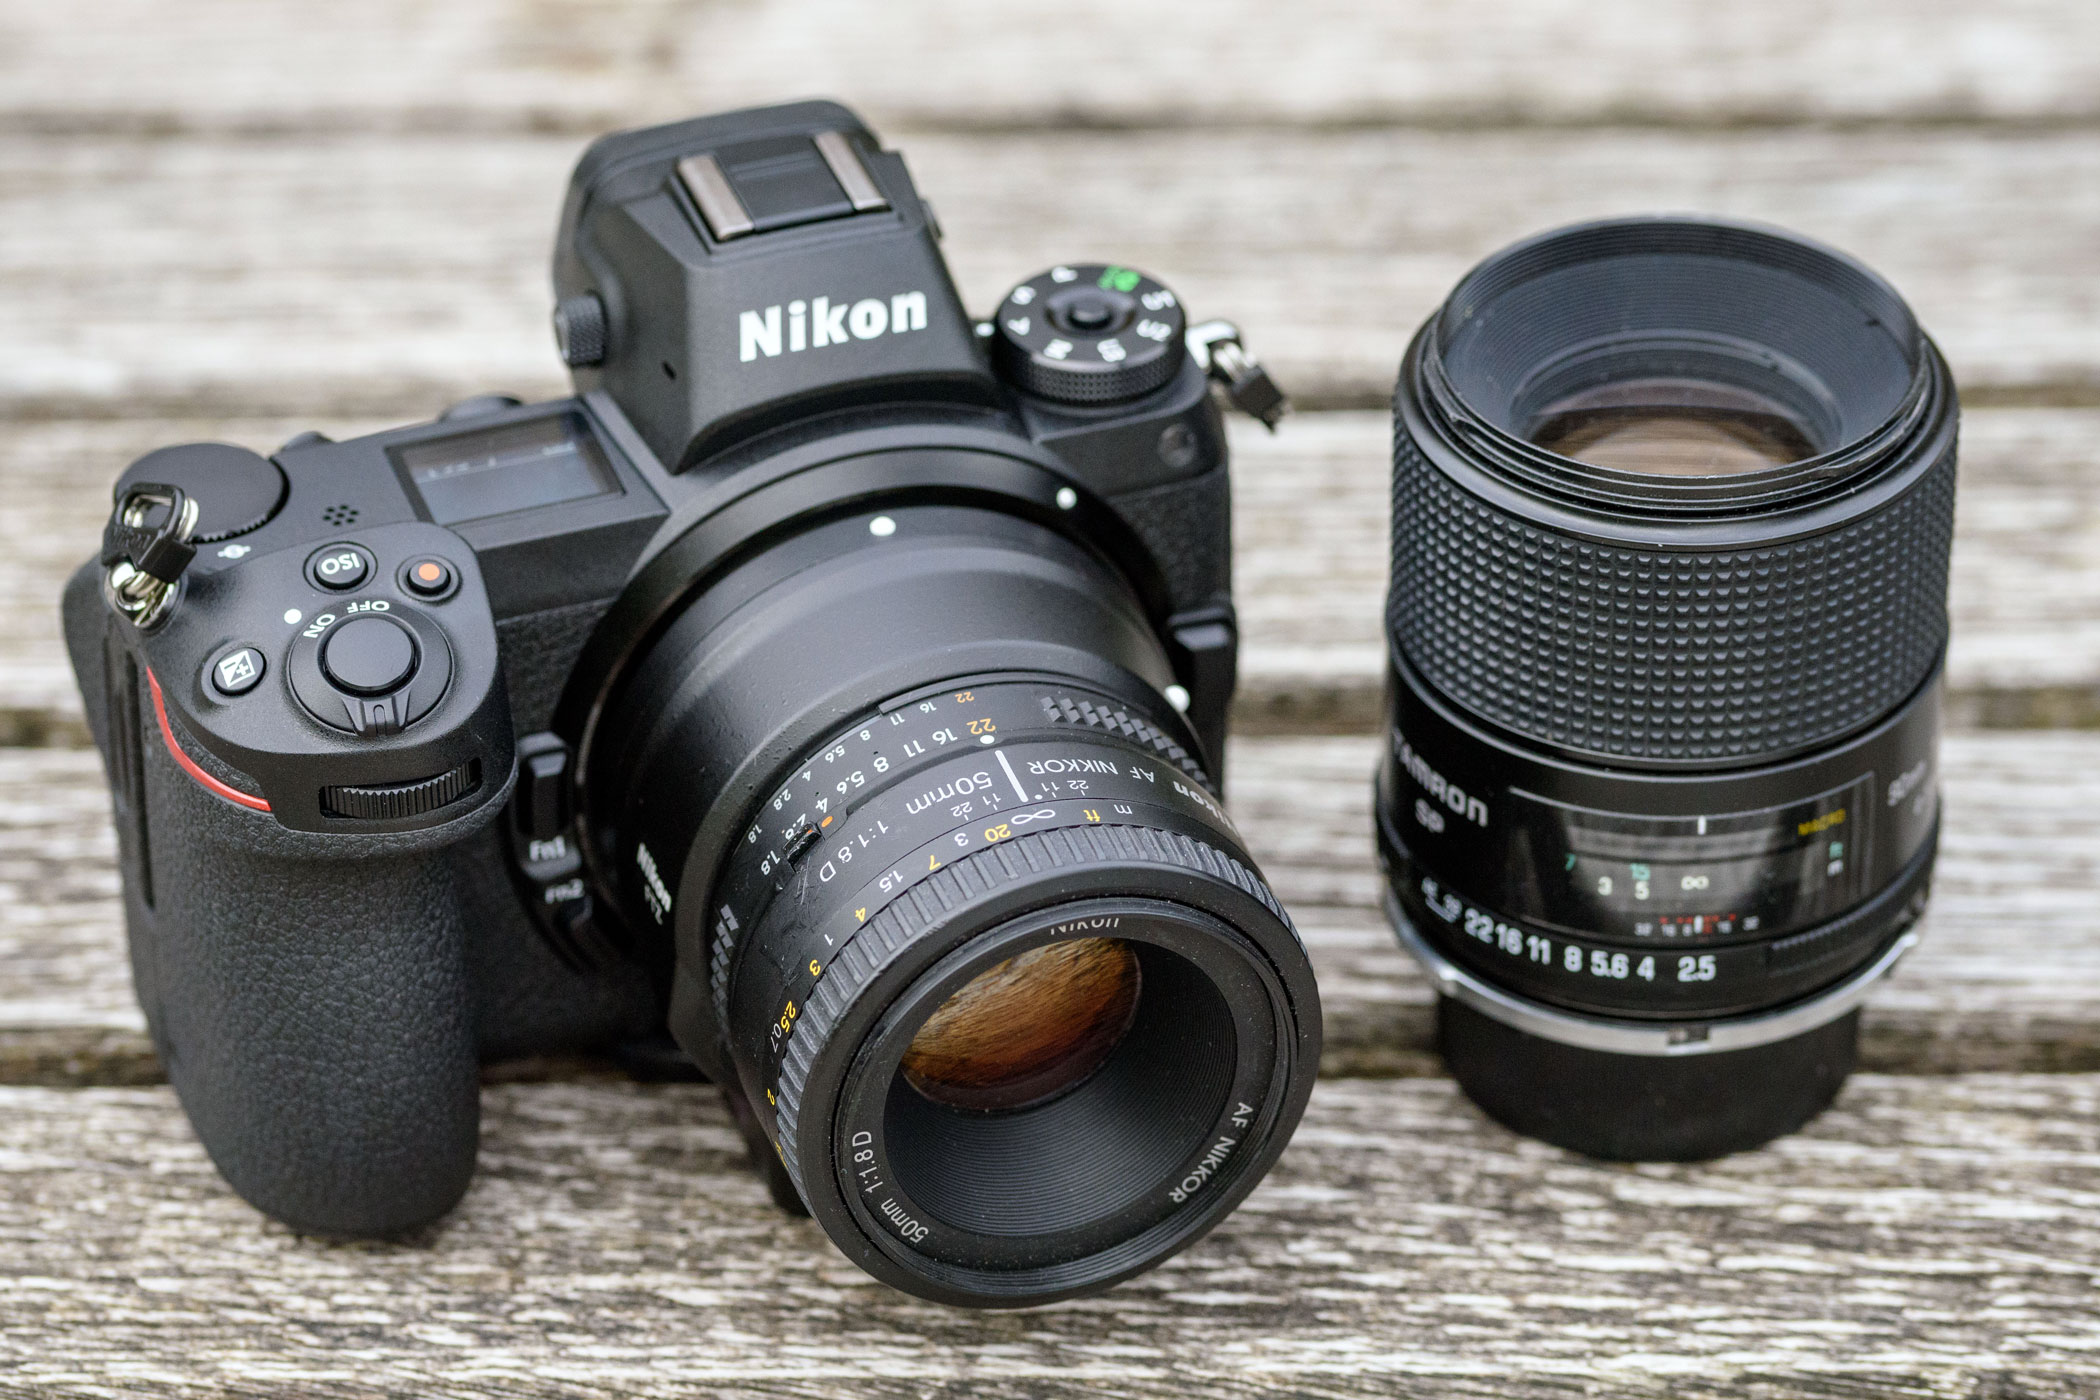 Nikon Z7 Image Quality Comparison vs Nikon D850, Canon EOS R, Canon 5DS R, Fuji 50R and Sony A7R III